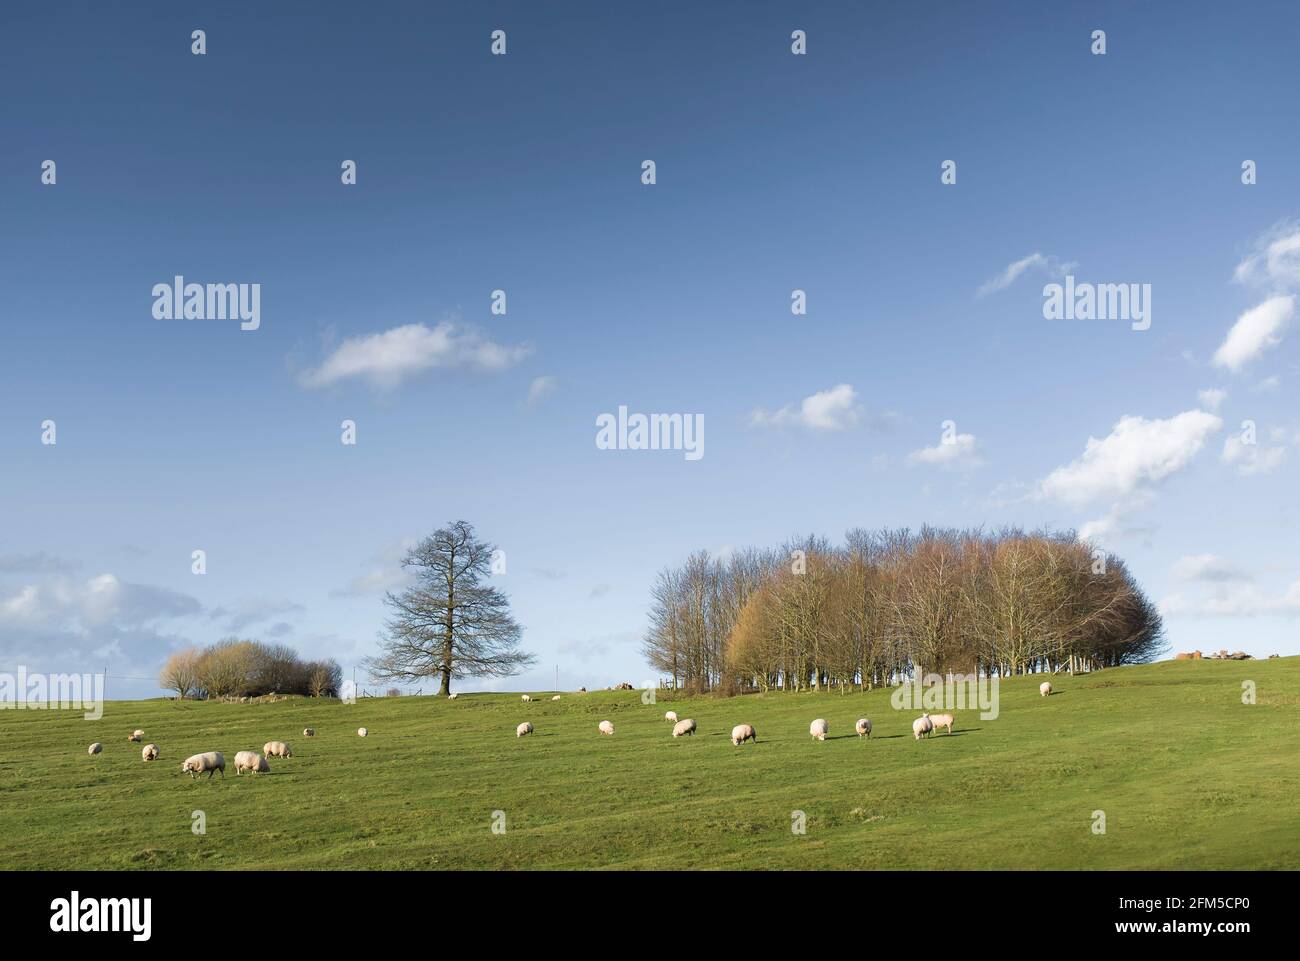 Royaume-Uni agriculture, scène agricole. Moutons dans le champ en hiver (février), avec arbres sur une colline et ciel bleu. Buckinghamshire, Angleterre Banque D'Images